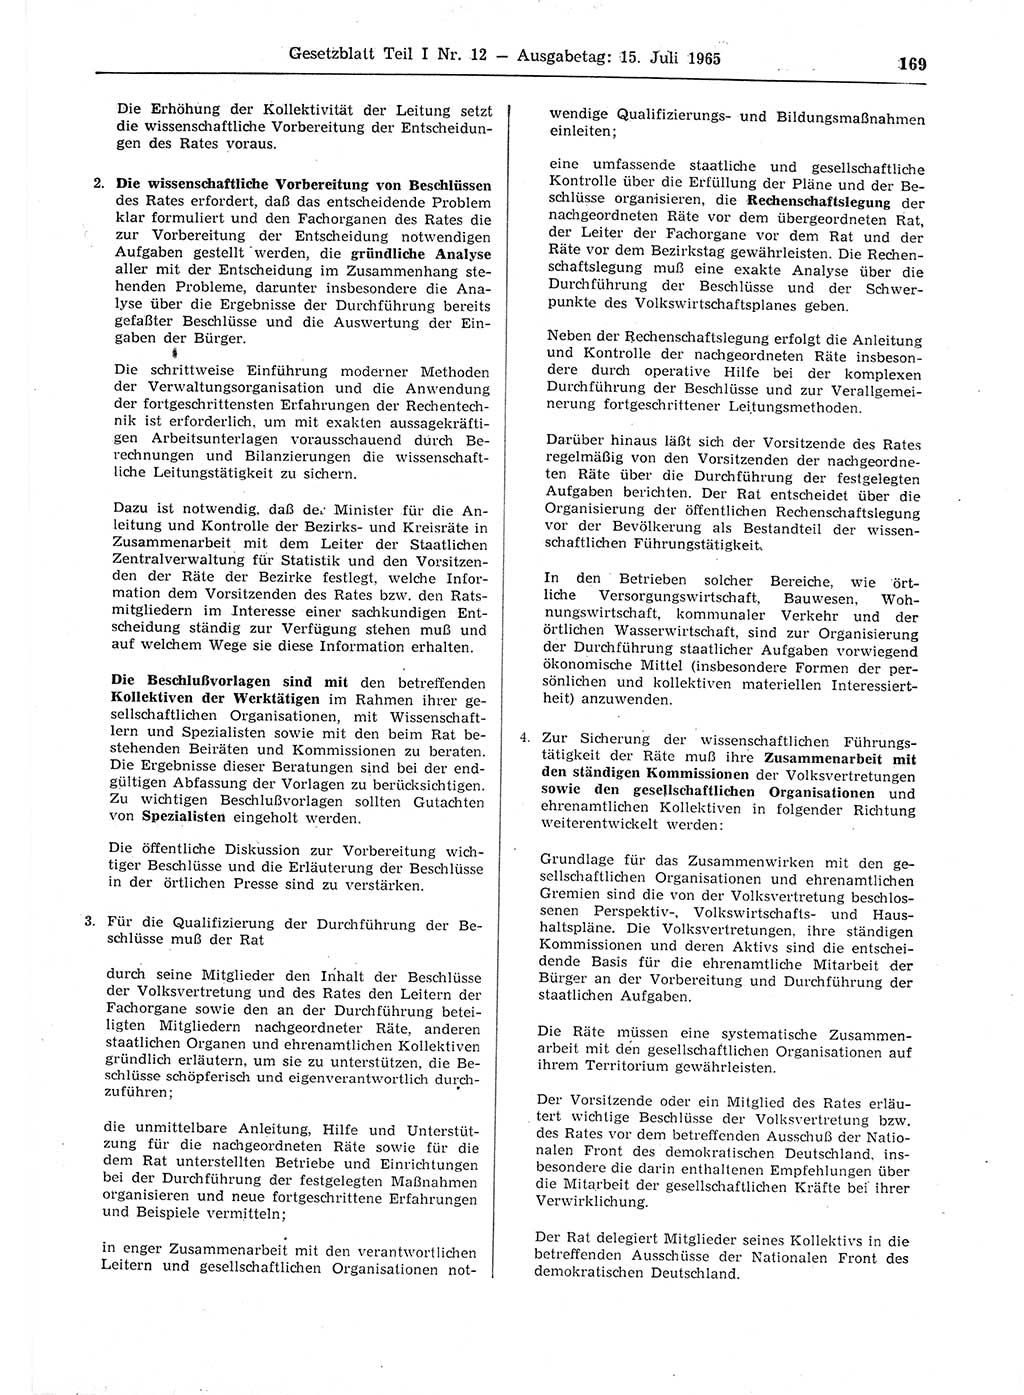 Gesetzblatt (GBl.) der Deutschen Demokratischen Republik (DDR) Teil Ⅰ 1965, Seite 169 (GBl. DDR Ⅰ 1965, S. 169)